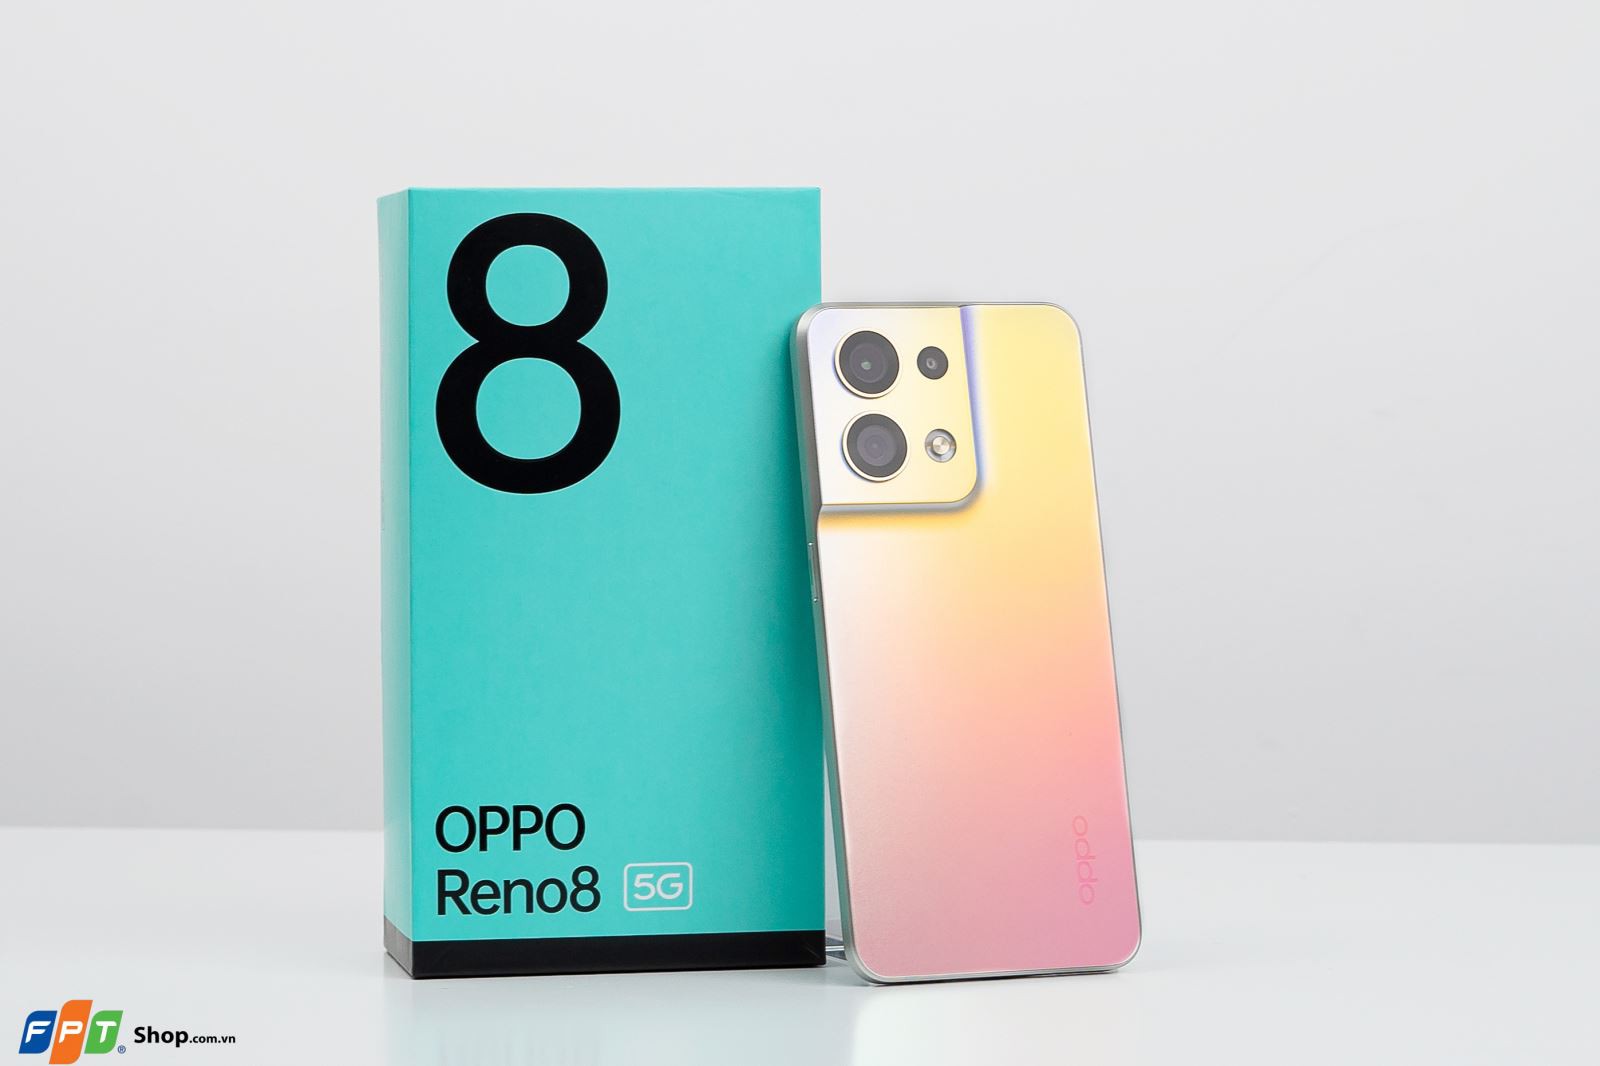 Đánh giá chi tiết OPPO Reno8 5G: Liệu có phải là bản nâng cấp sáng giá?